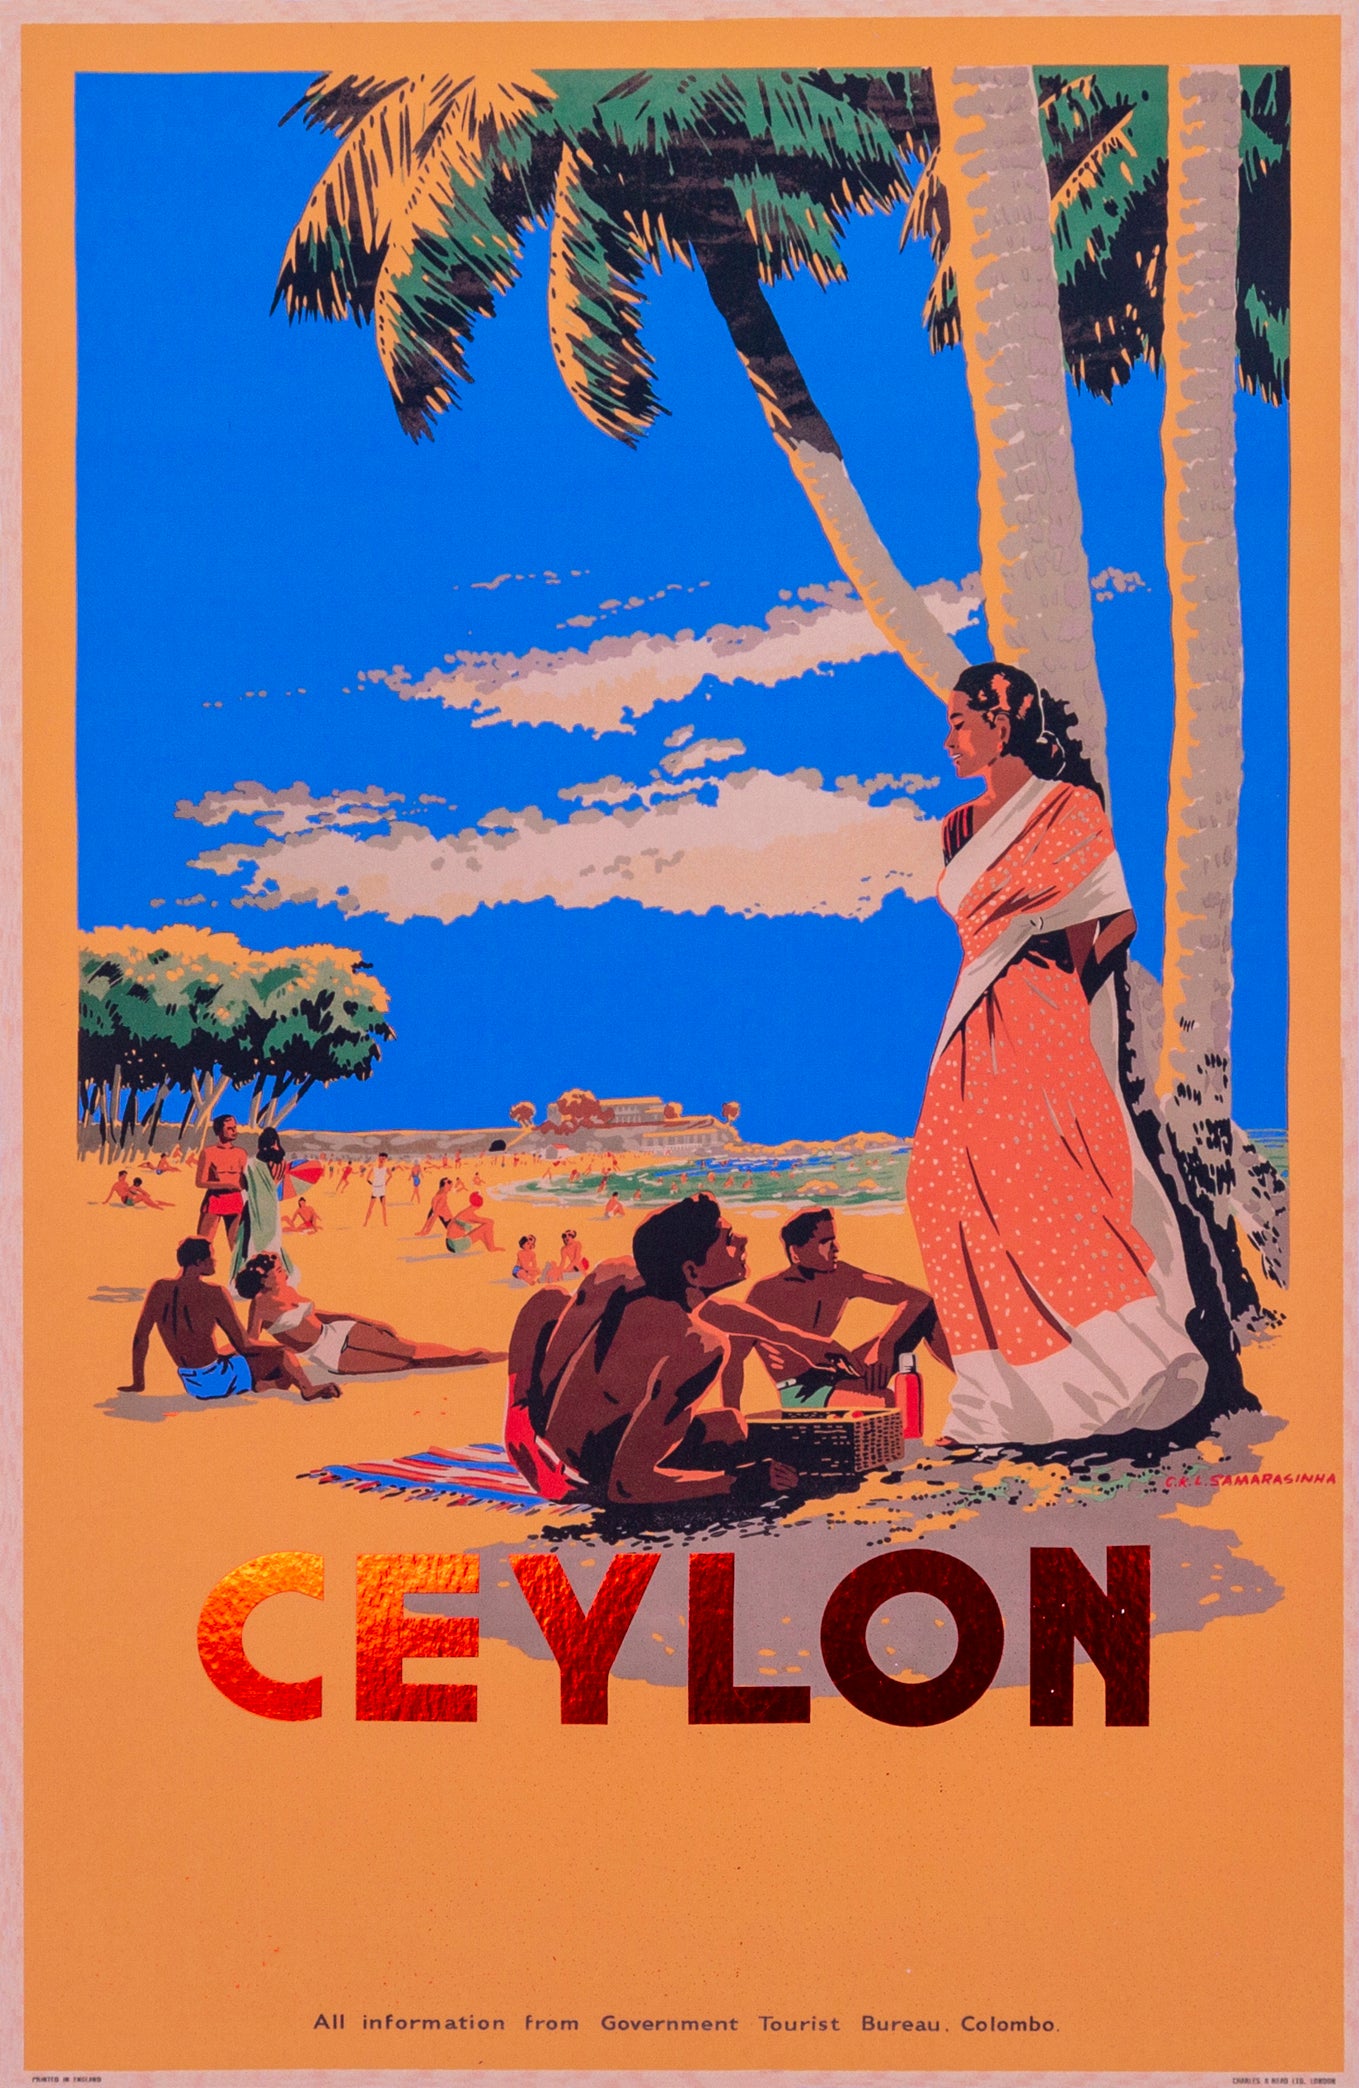 Mount Lavinia Beach, Ceylon, 1948.